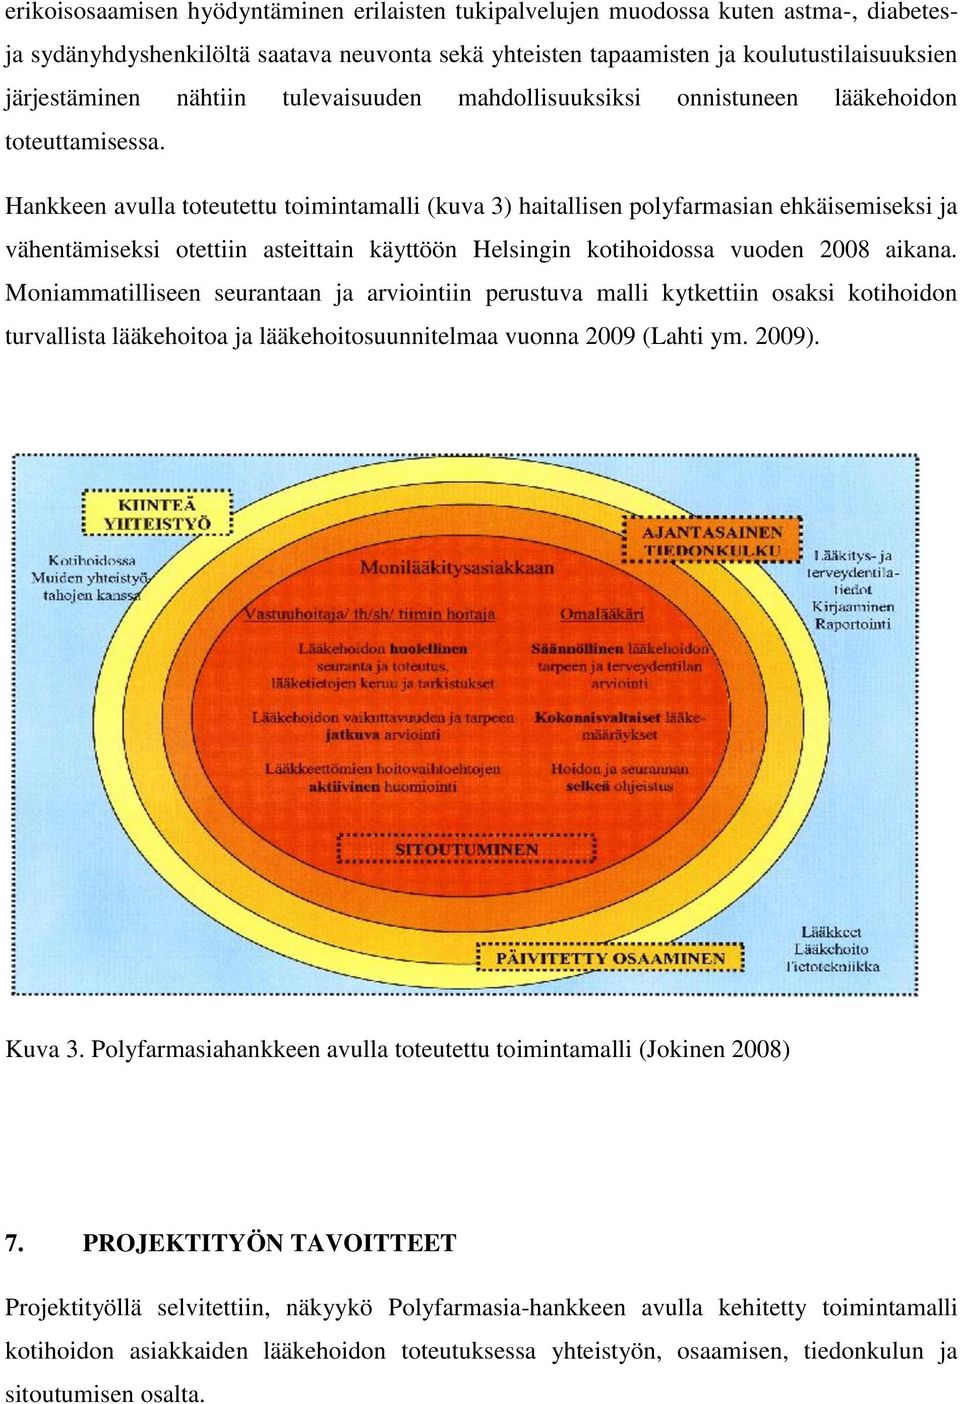 Hankkeen avulla toteutettu toimintamalli (kuva 3) haitallisen polyfarmasian ehkäisemiseksi ja vähentämiseksi otettiin asteittain käyttöön Helsingin kotihoidossa vuoden 2008 aikana.